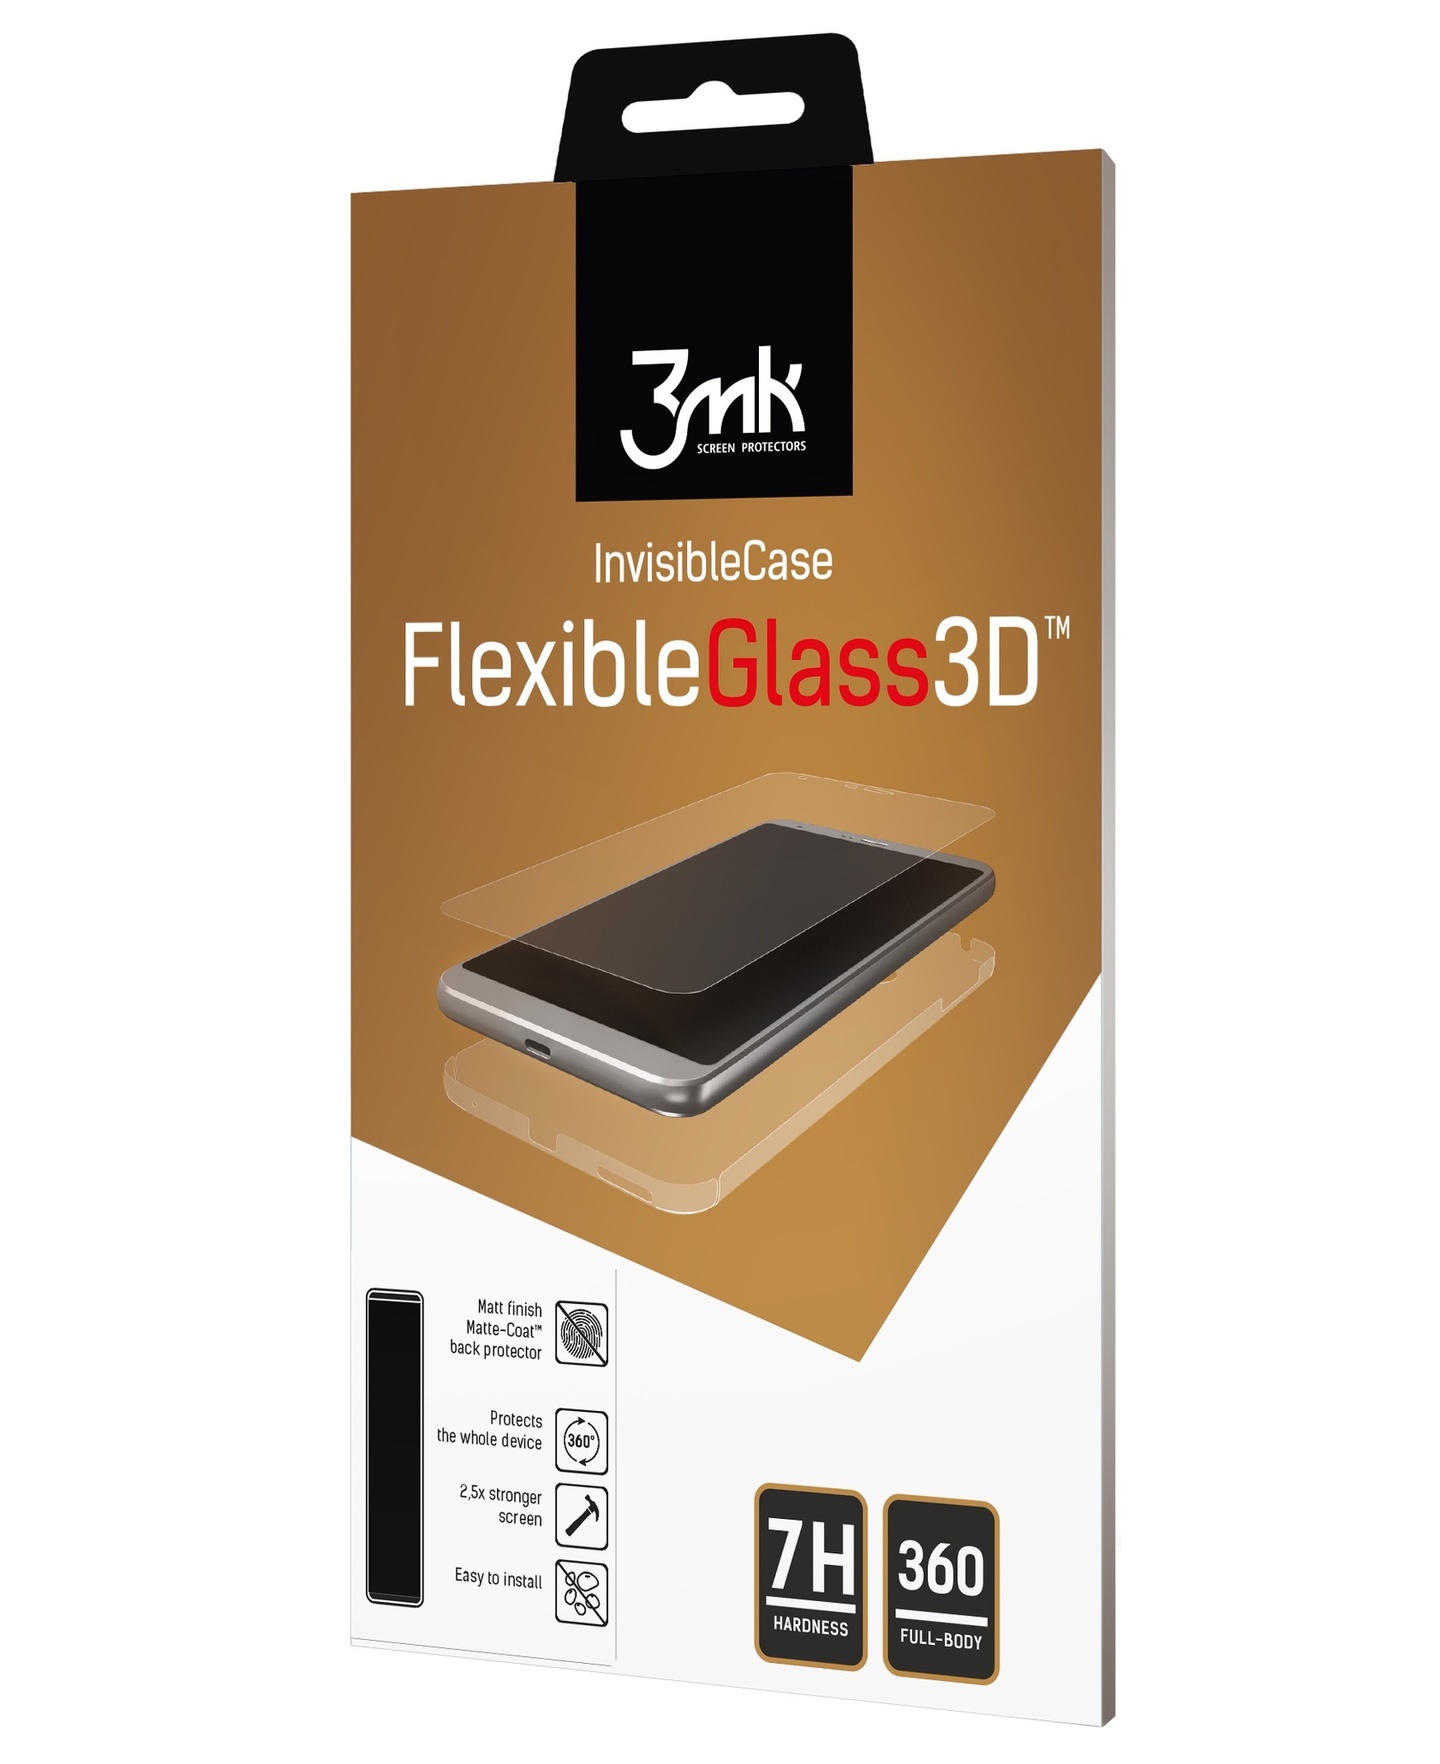 3mk FlexibleGlass 3D Apple iPhone 8/7 Plus High-Grip